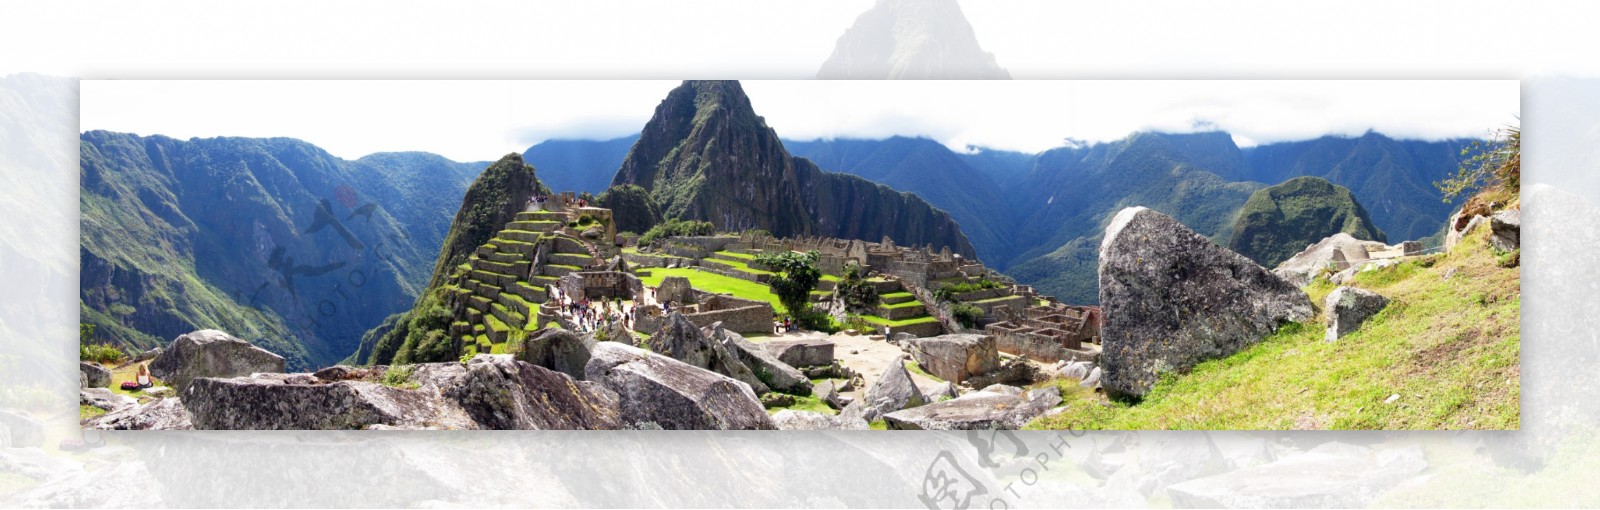 秘鲁印加遗址图片